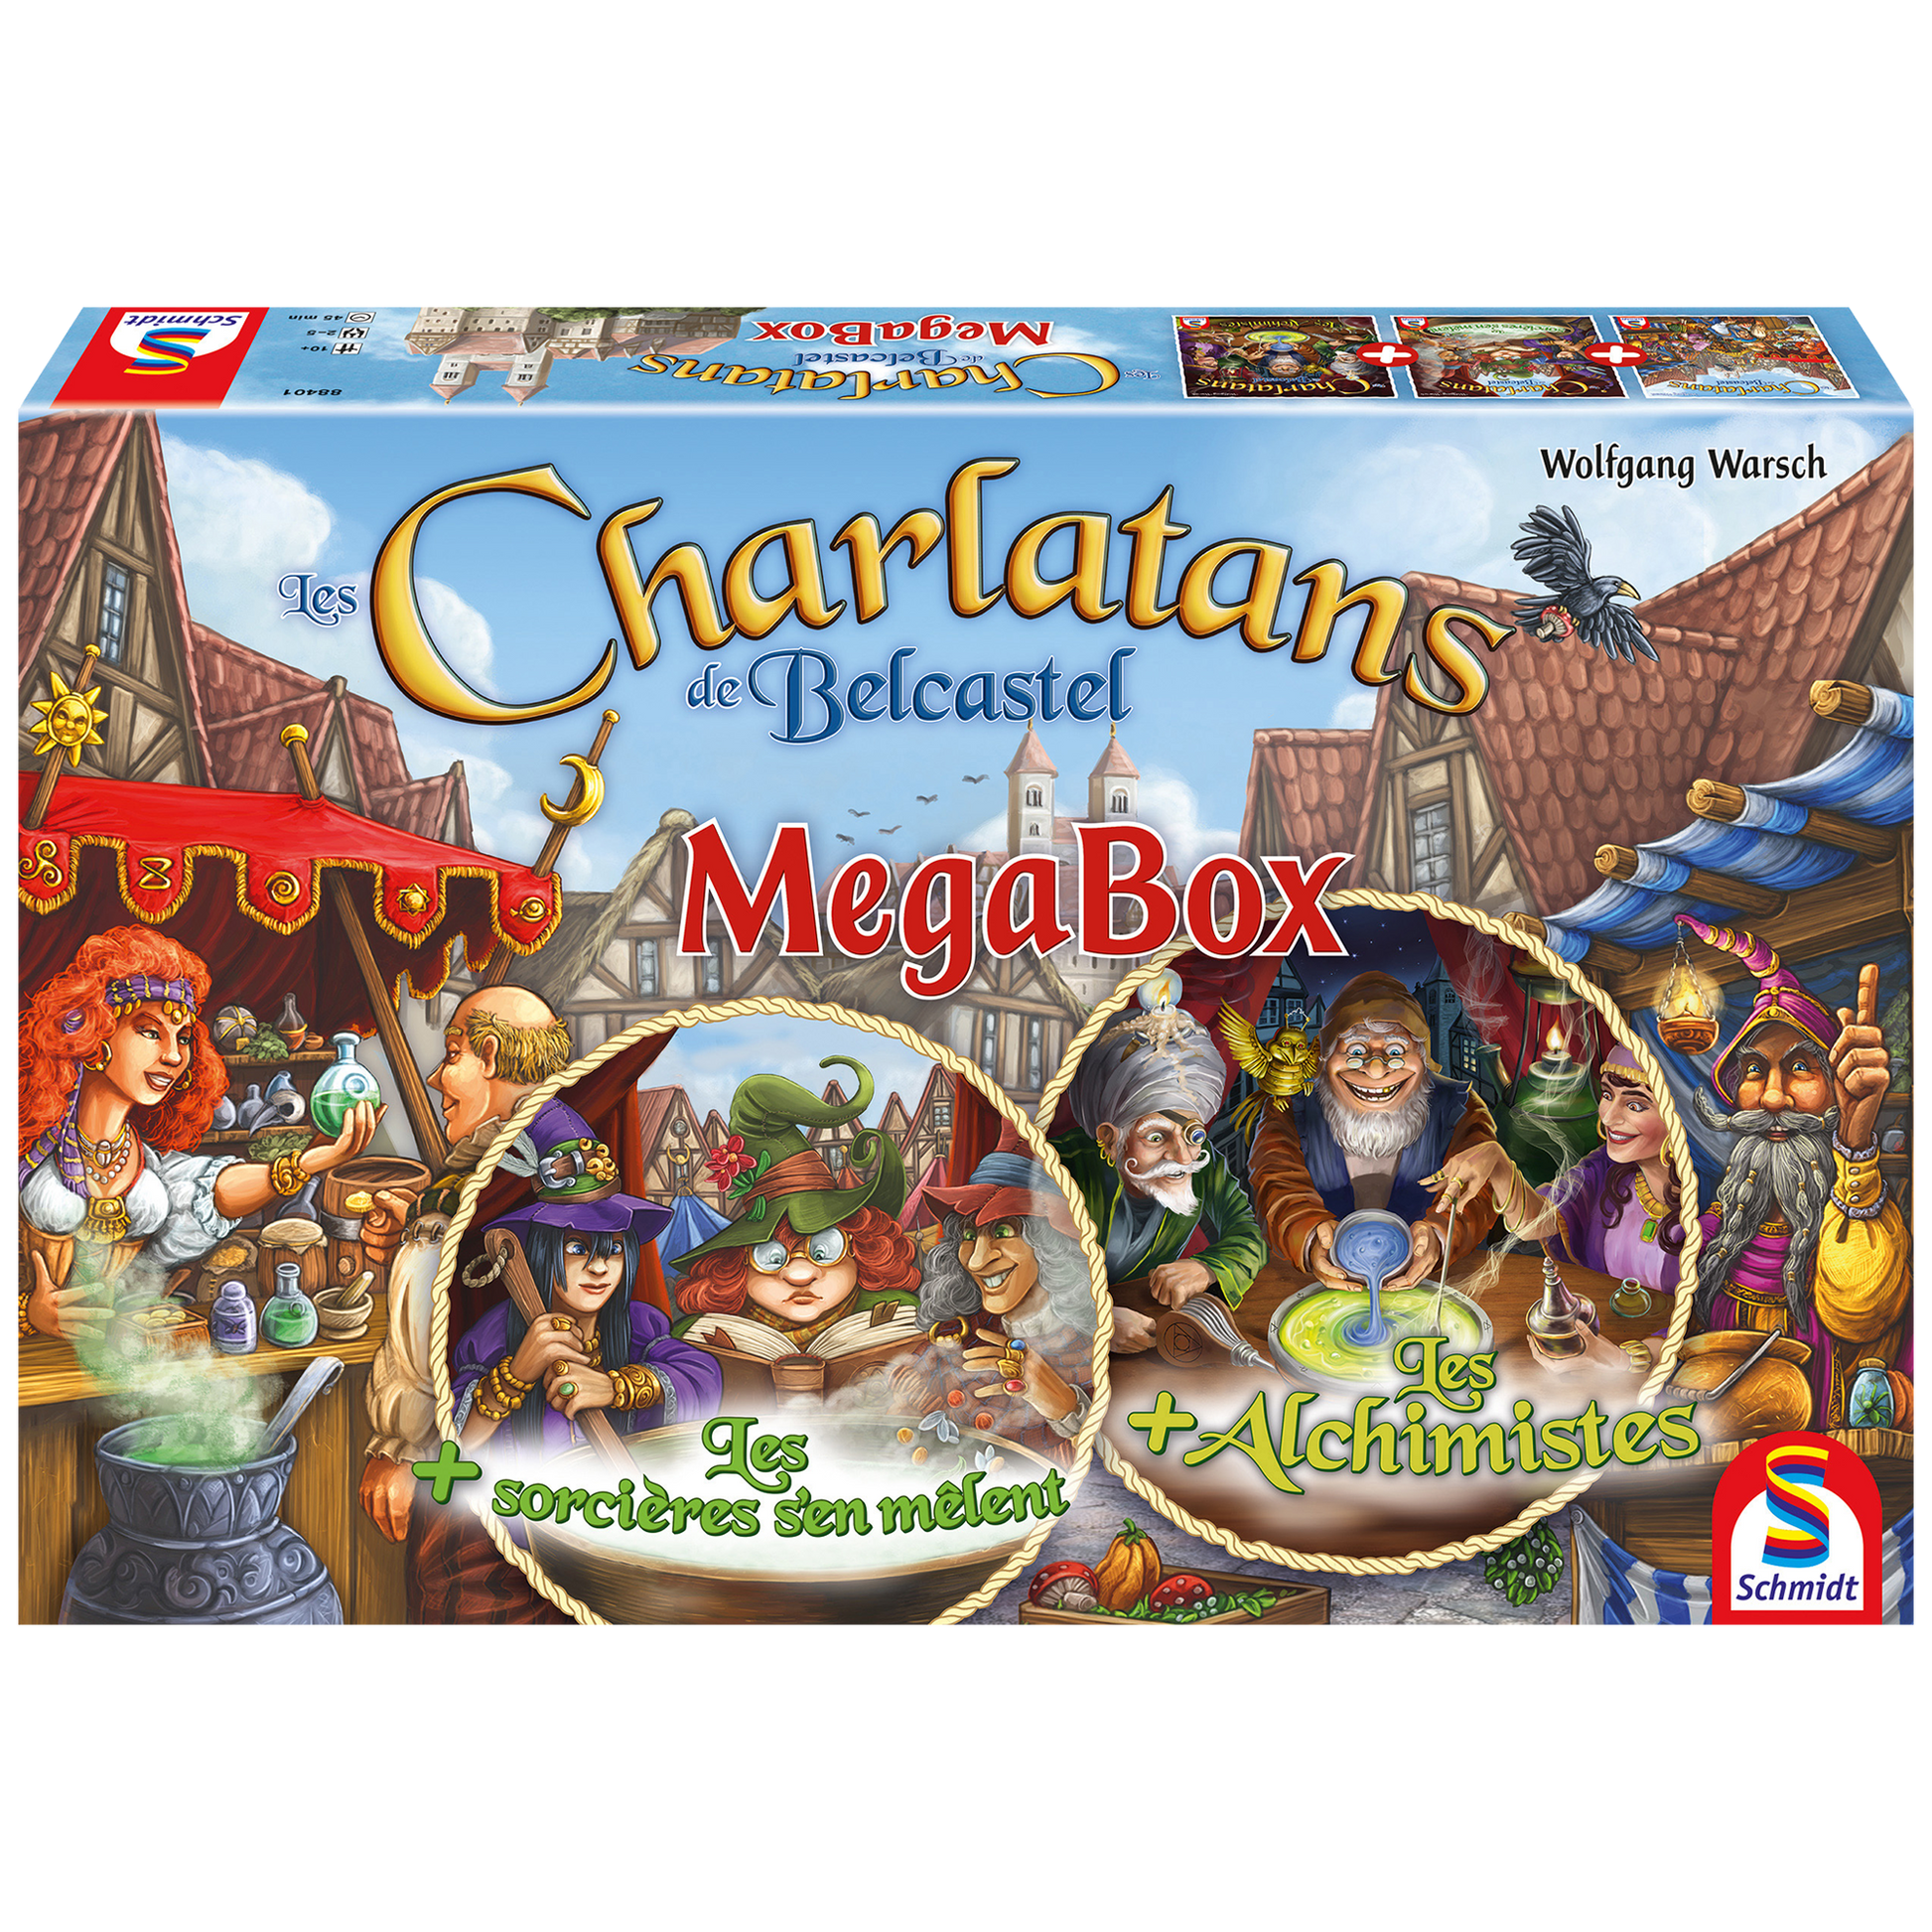 Boîte du jeu Charlatans de Belcastel - Mega box en français